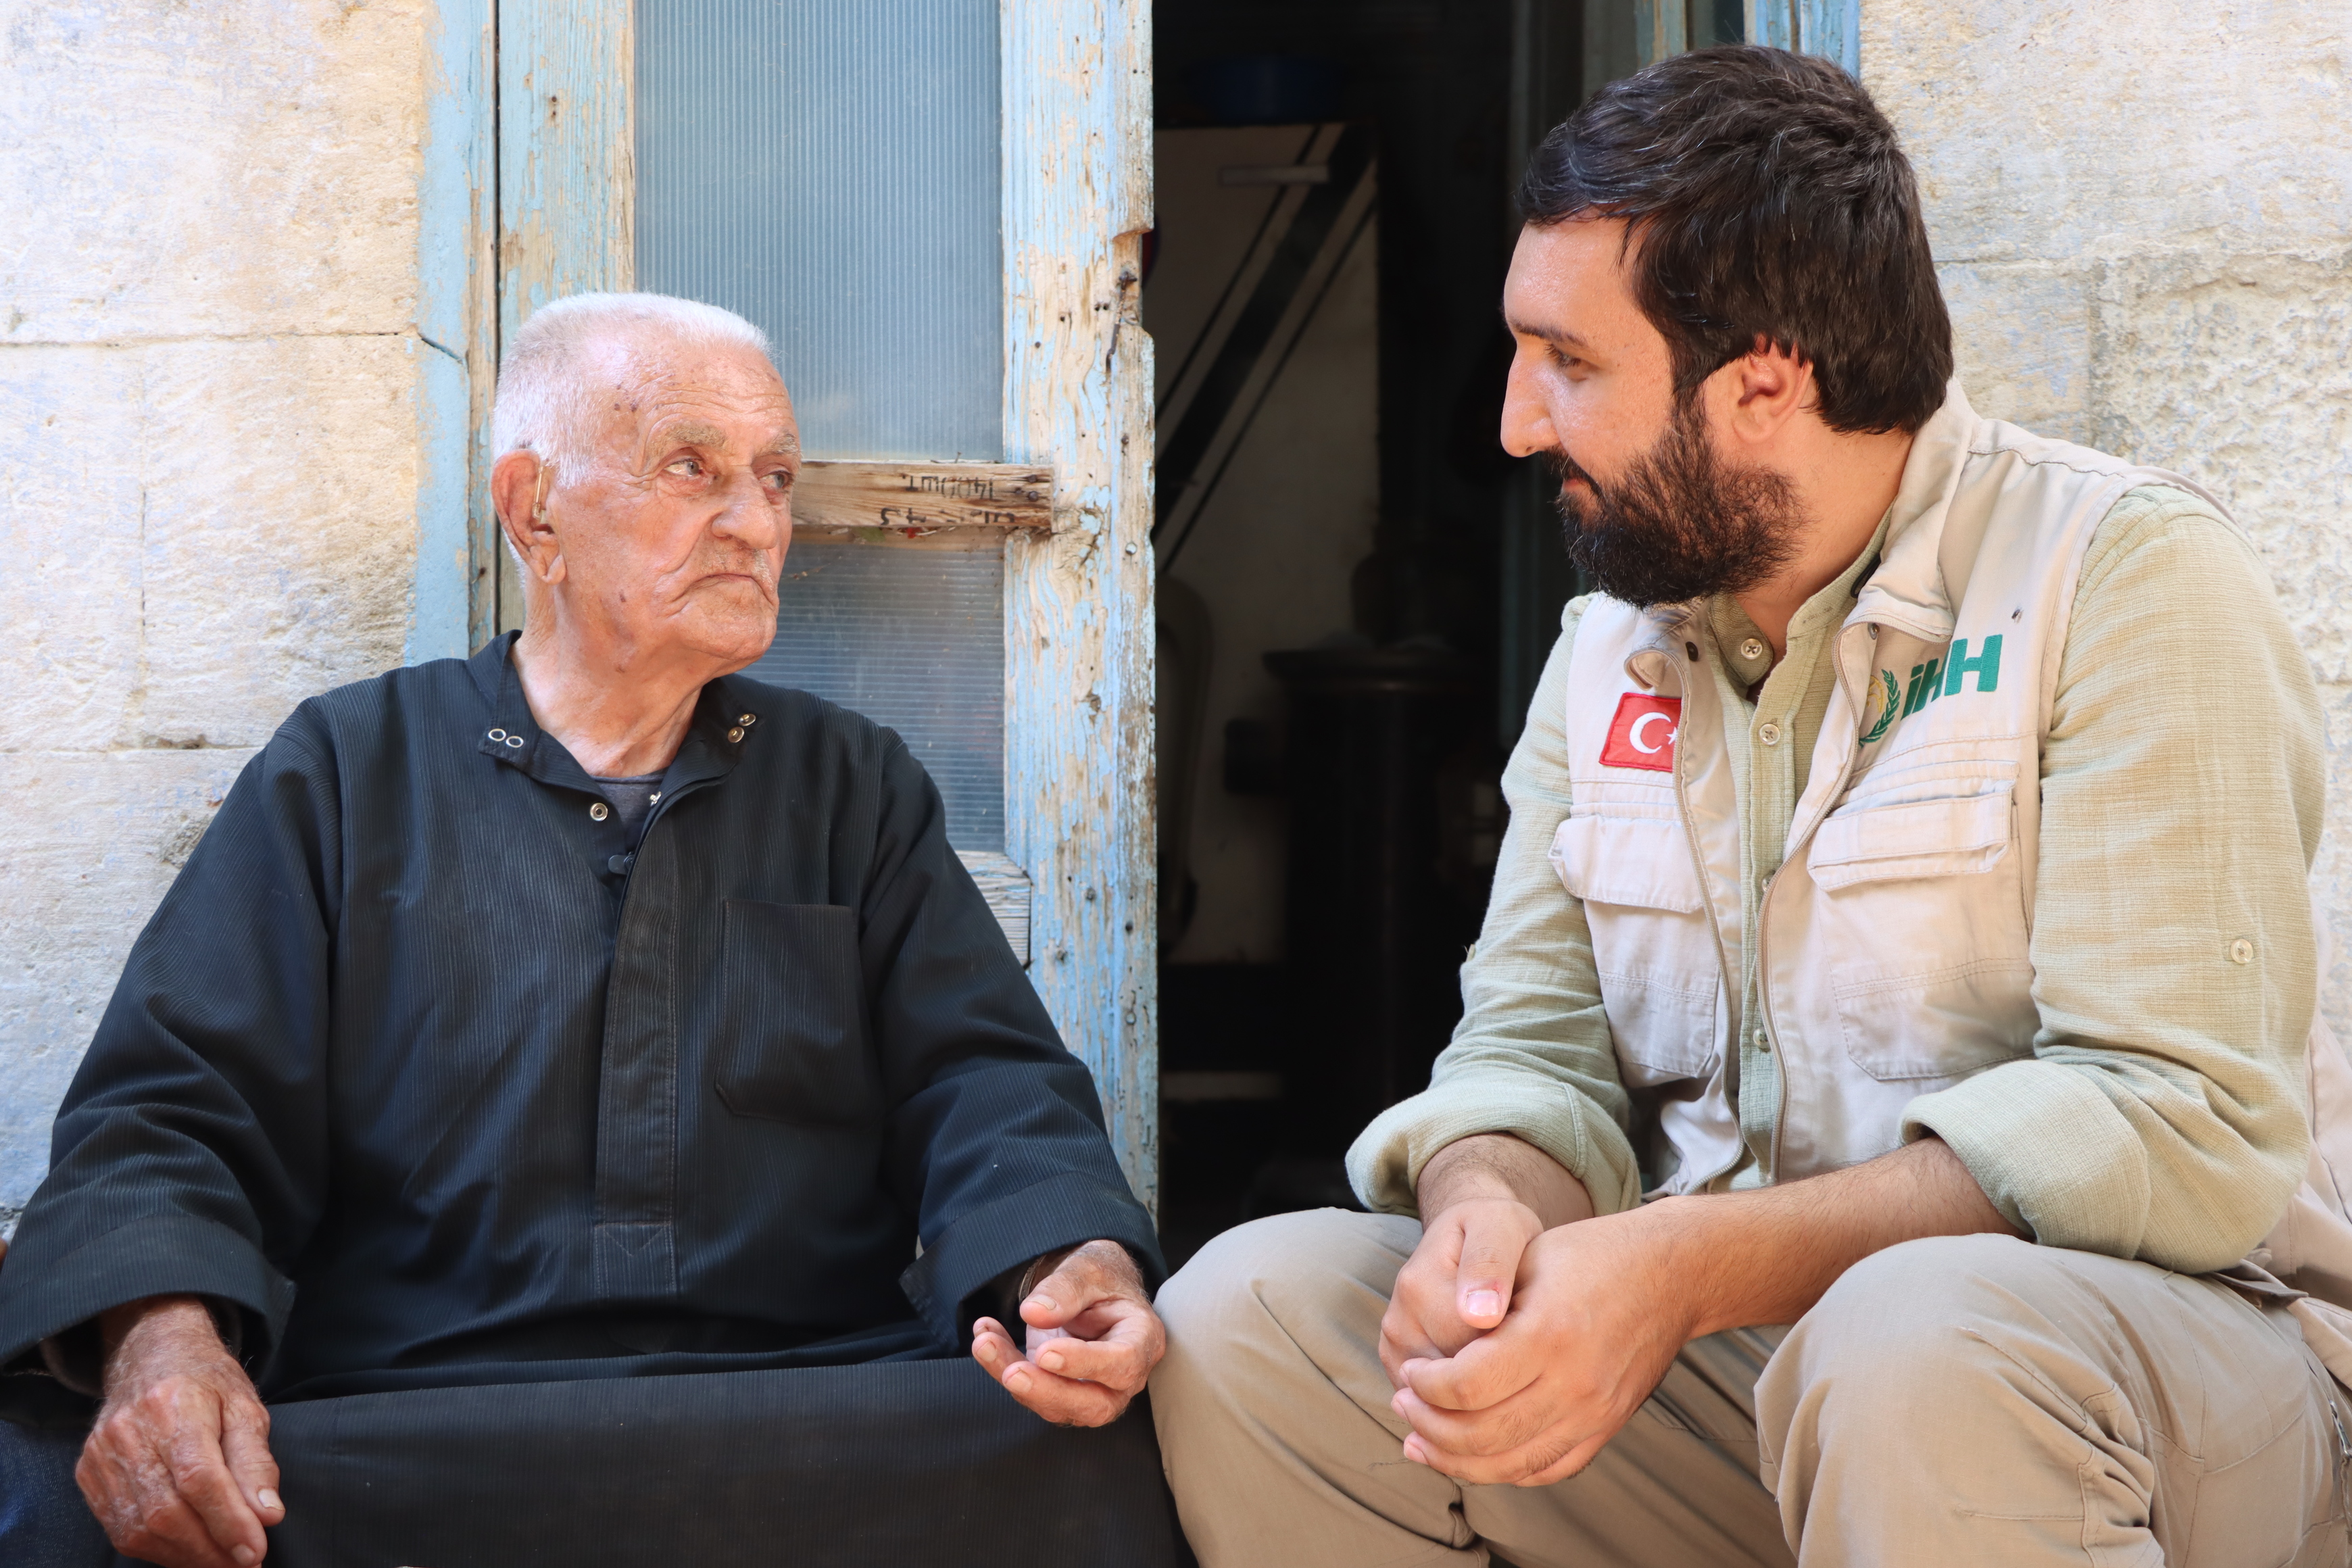 "الإغاثة التركية" تقدم مساعدة لمسن مسيحي يعيش وحيدا في إدلب